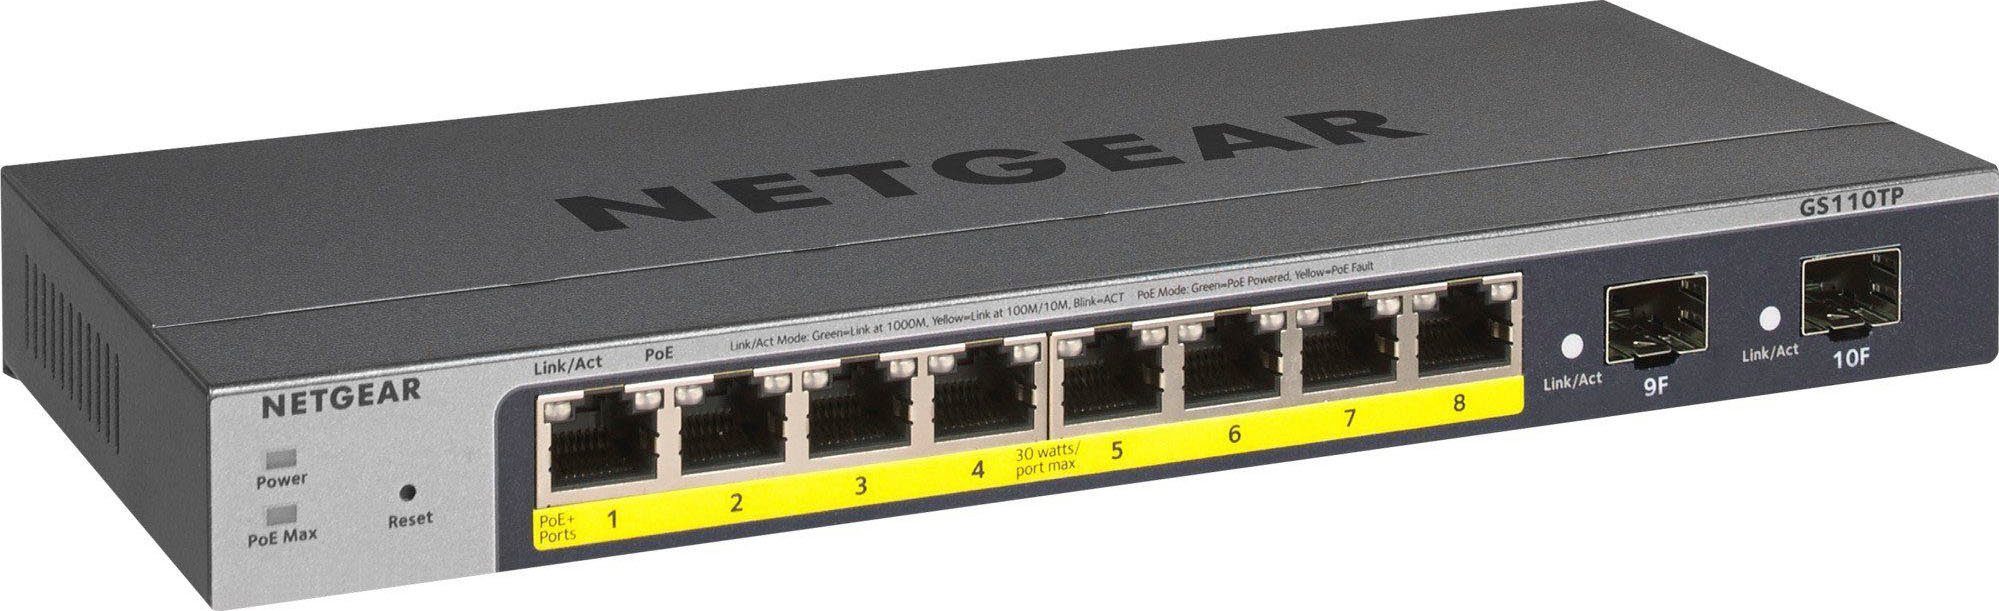 NETGEAR GS110TP v3 Netzwerk-Switch